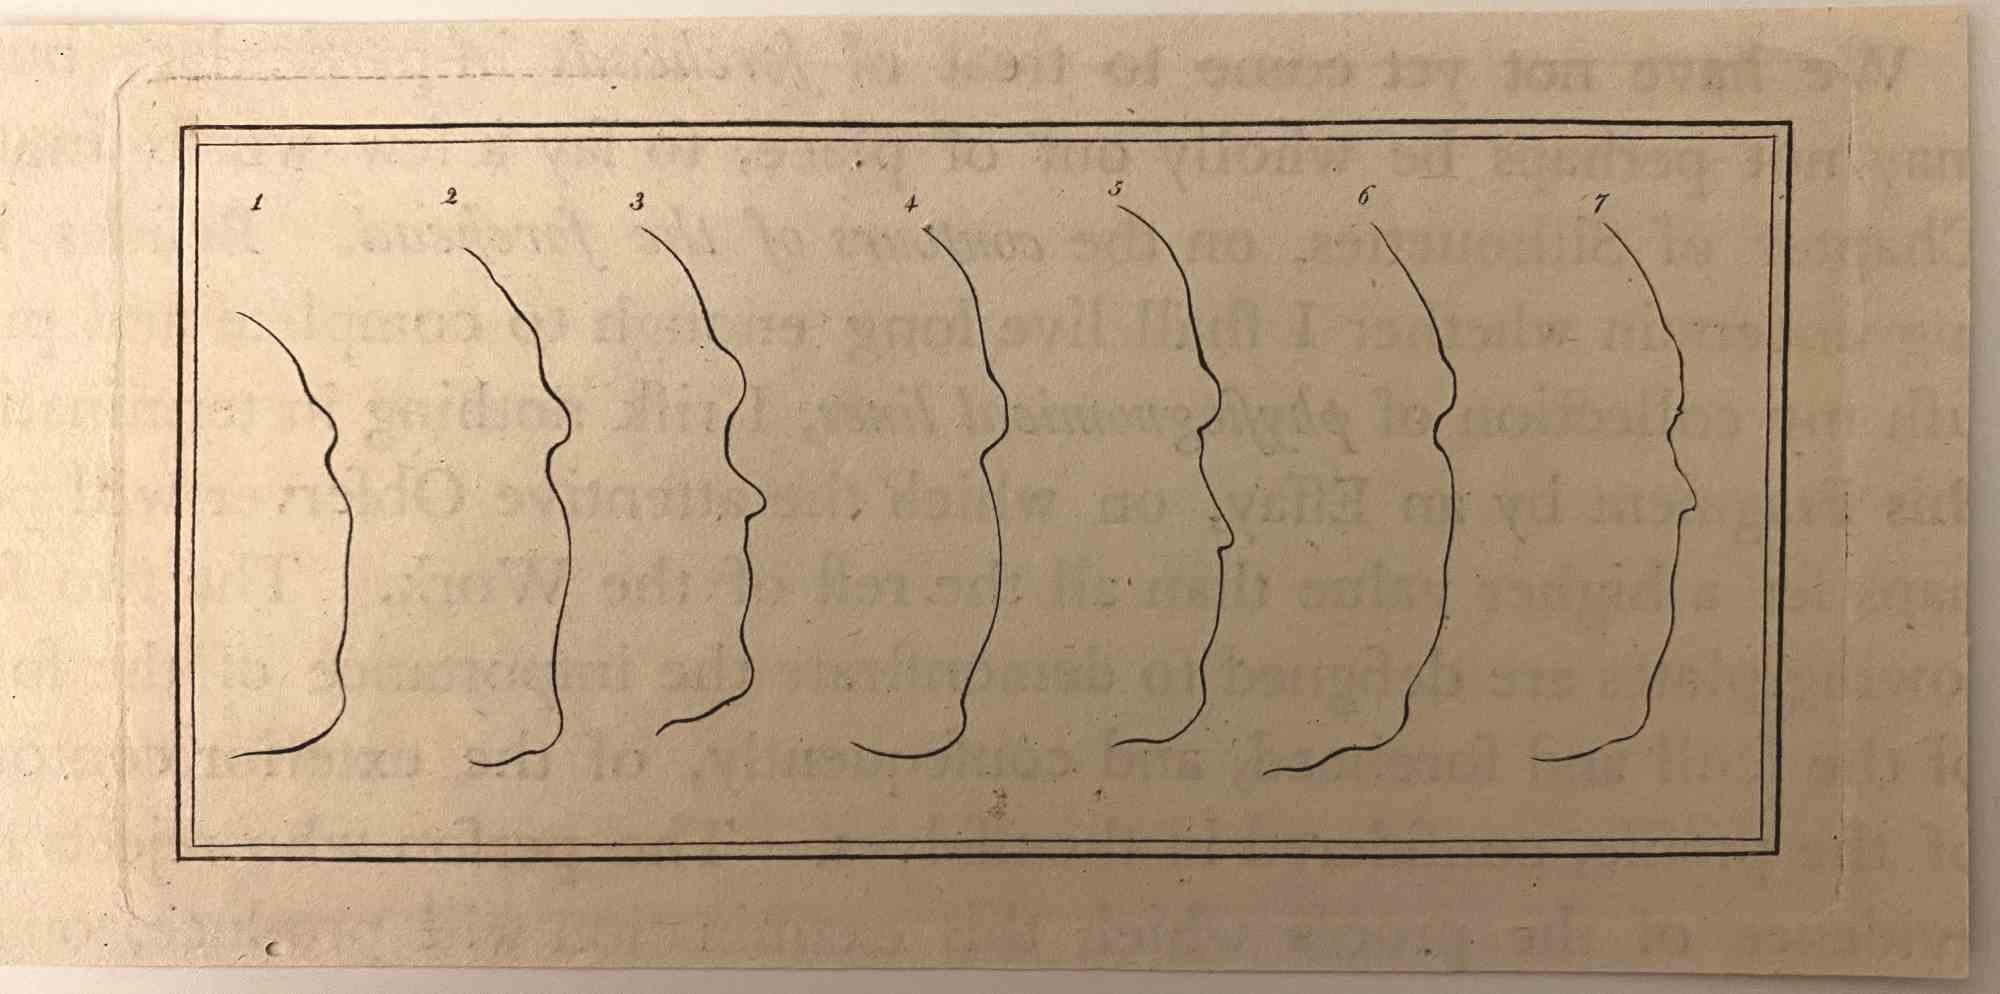 Die Physiognomie - Profile ist eine Original-Radierung von Thomas Holloway für Johann Caspar Lavaters "Essays on Physiognomy, Designed to Promote the Knowledge and the Love of Mankind", London, Bensley, 1810. 

Mit dem Schriftzug auf der